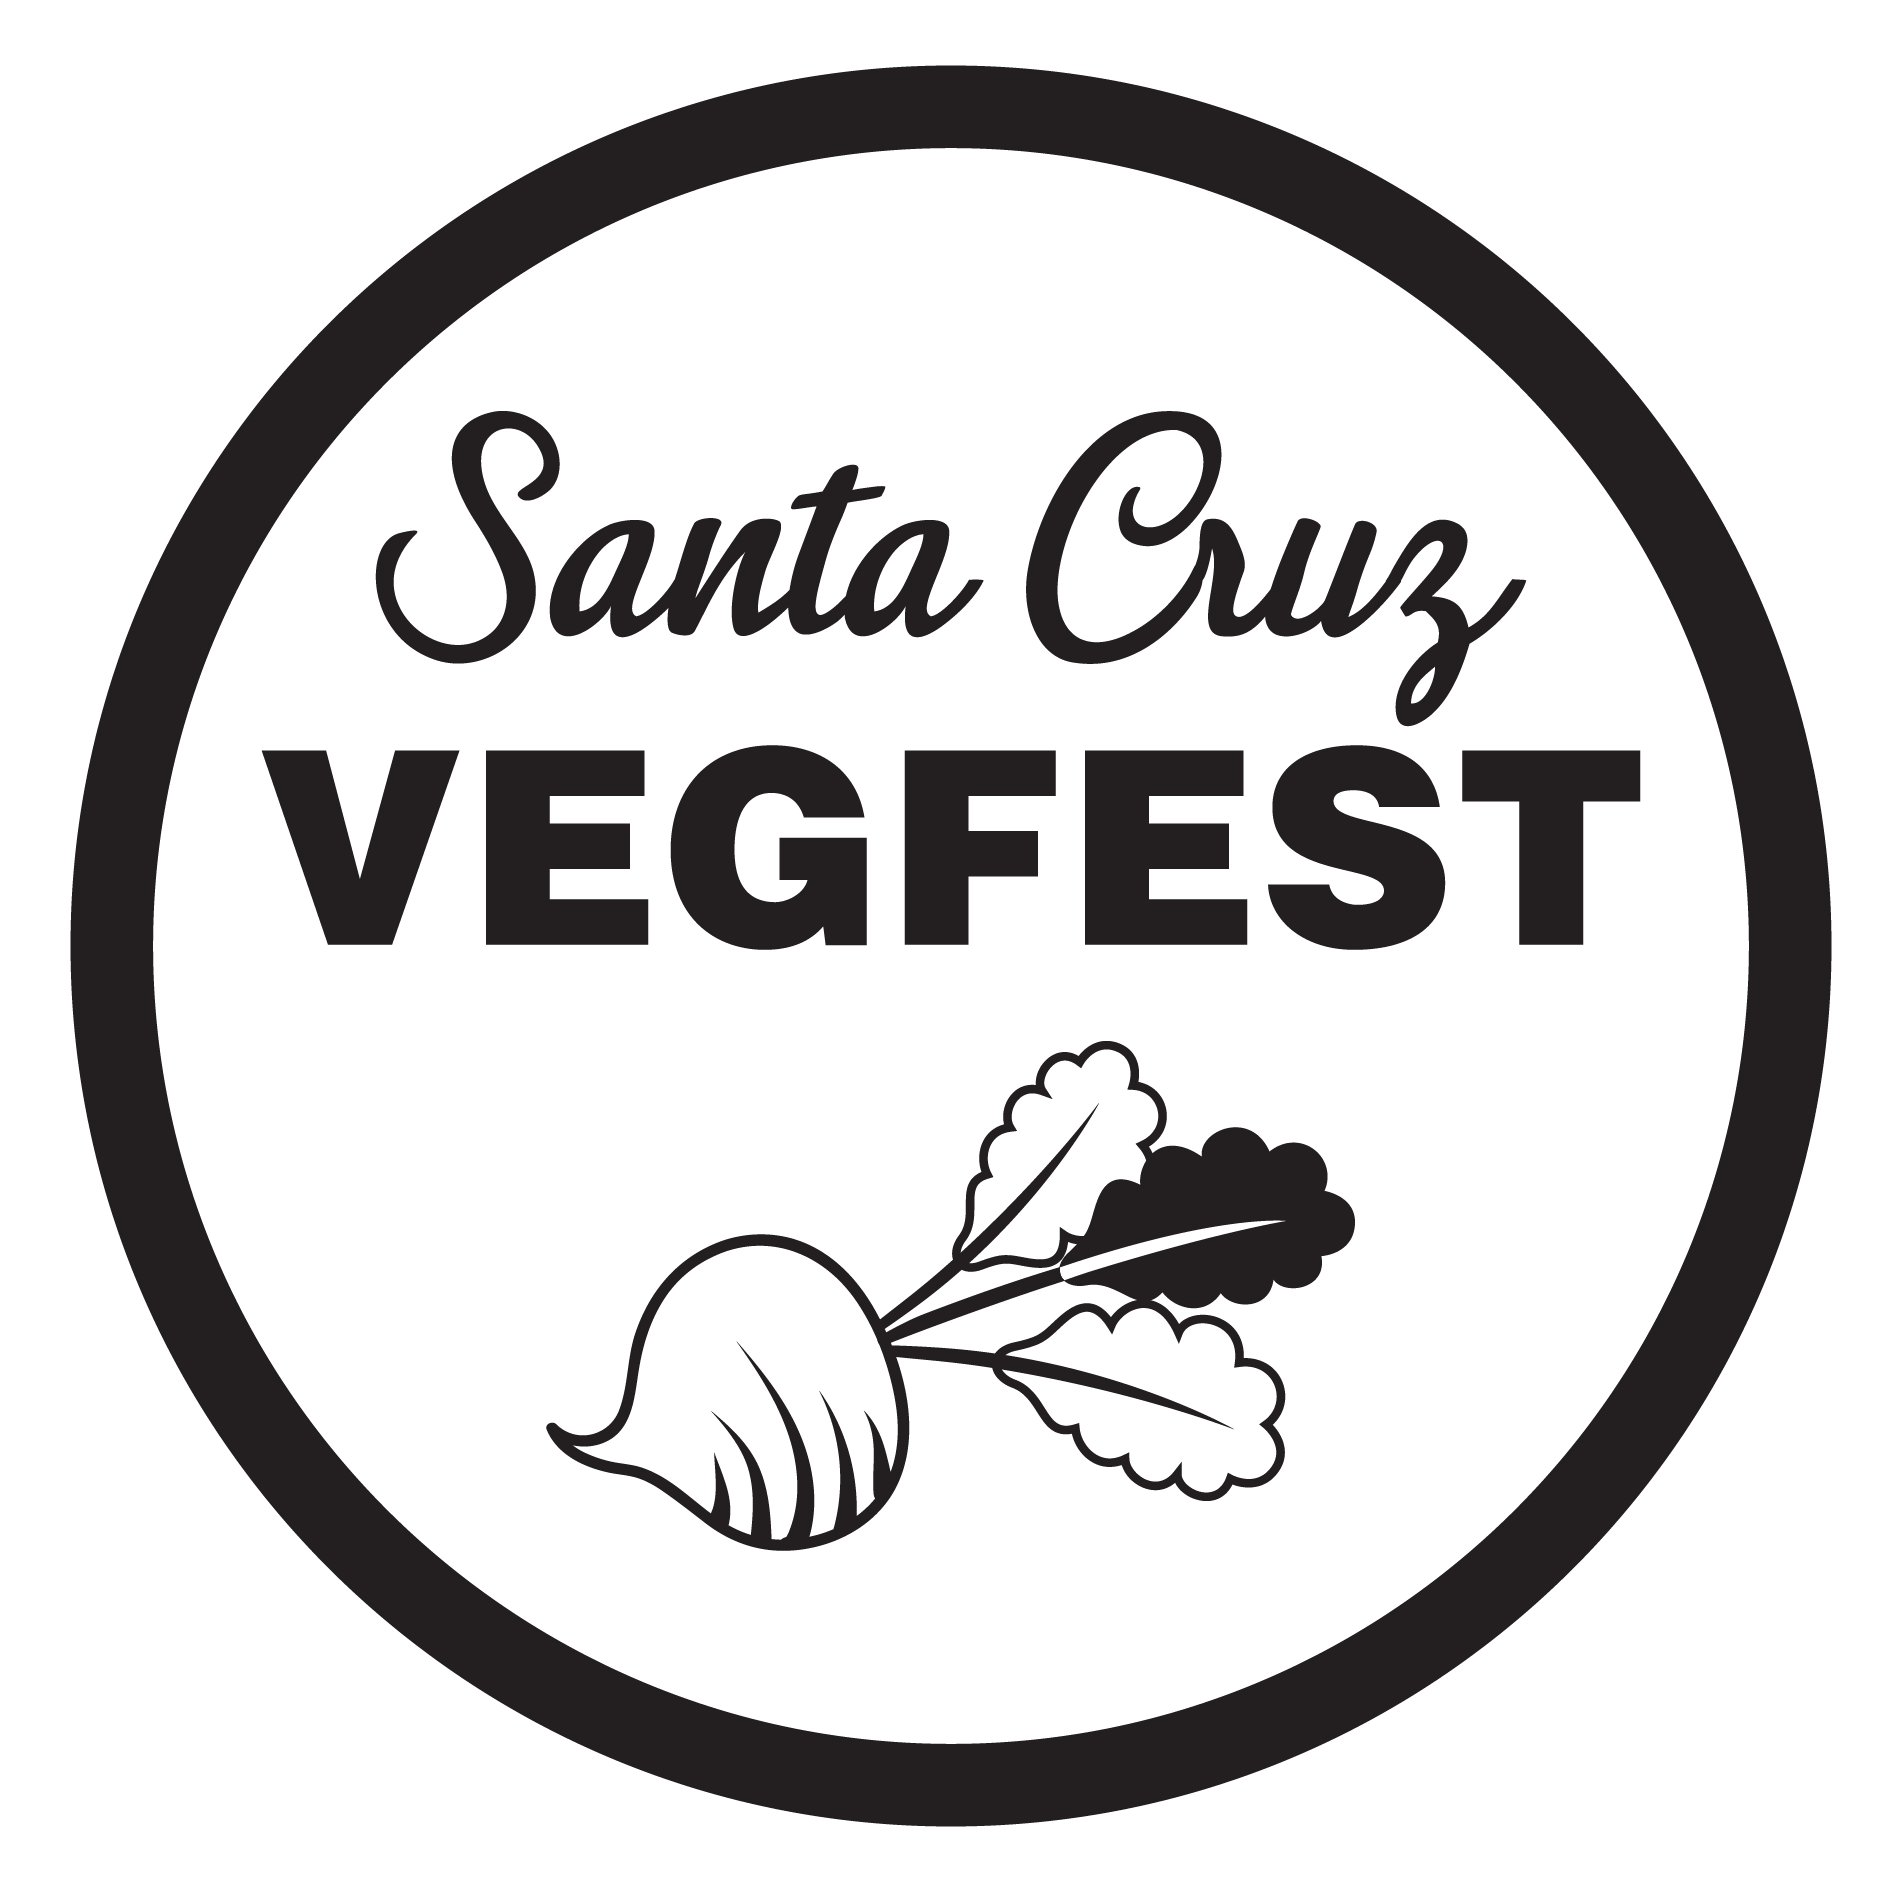 Santa Cruz VegFest